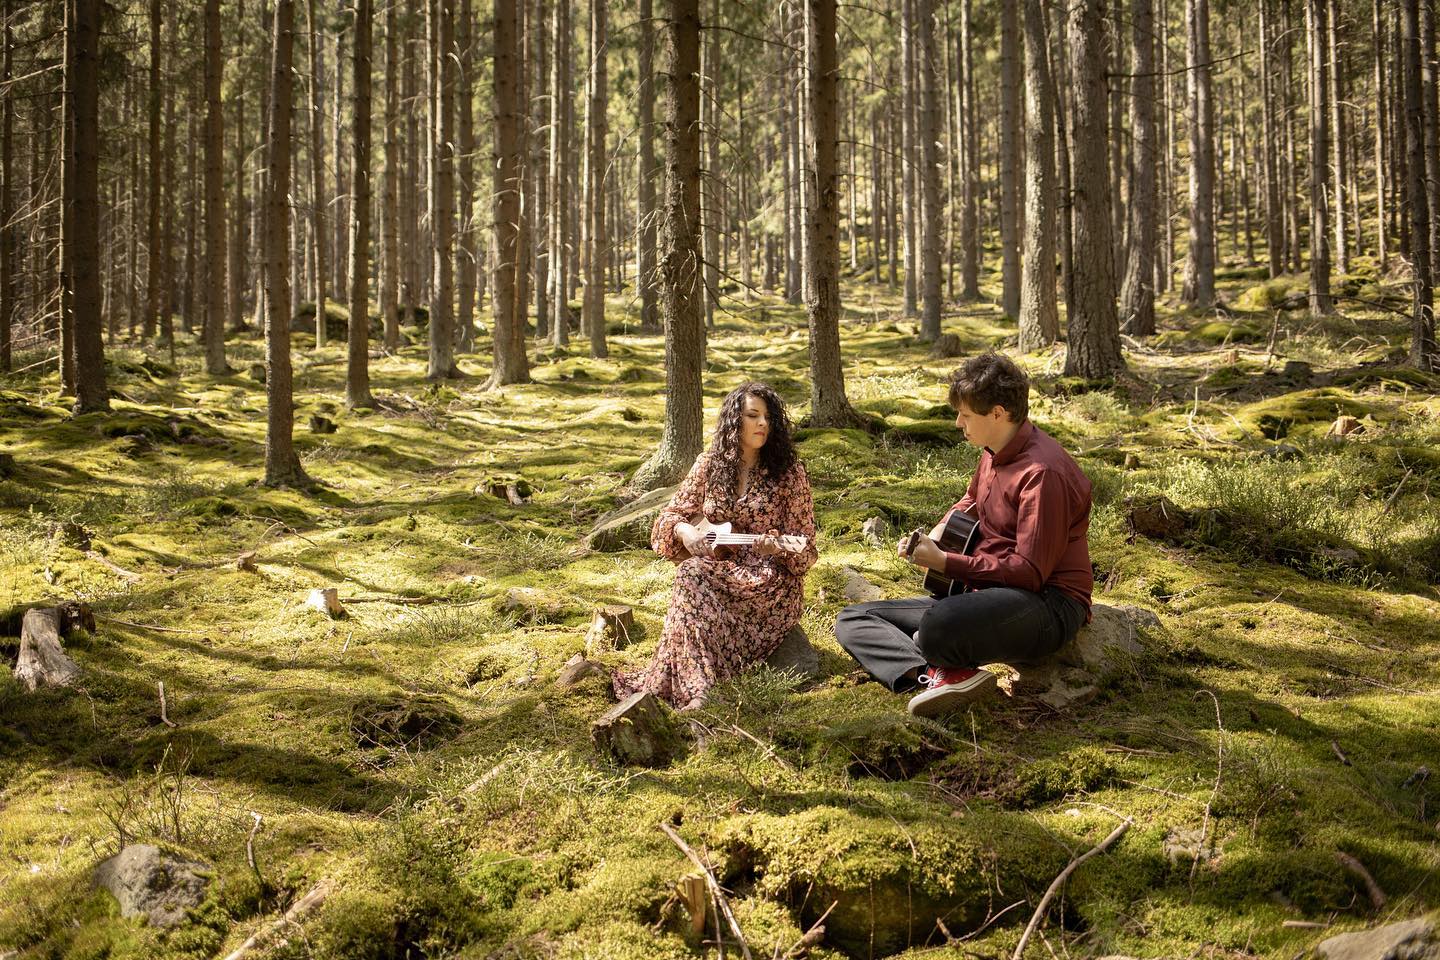 w lesie na mchu siedzą chłopak z gitarą i dziewczyna z długimi kręconymi włosami trzymająca ukulele